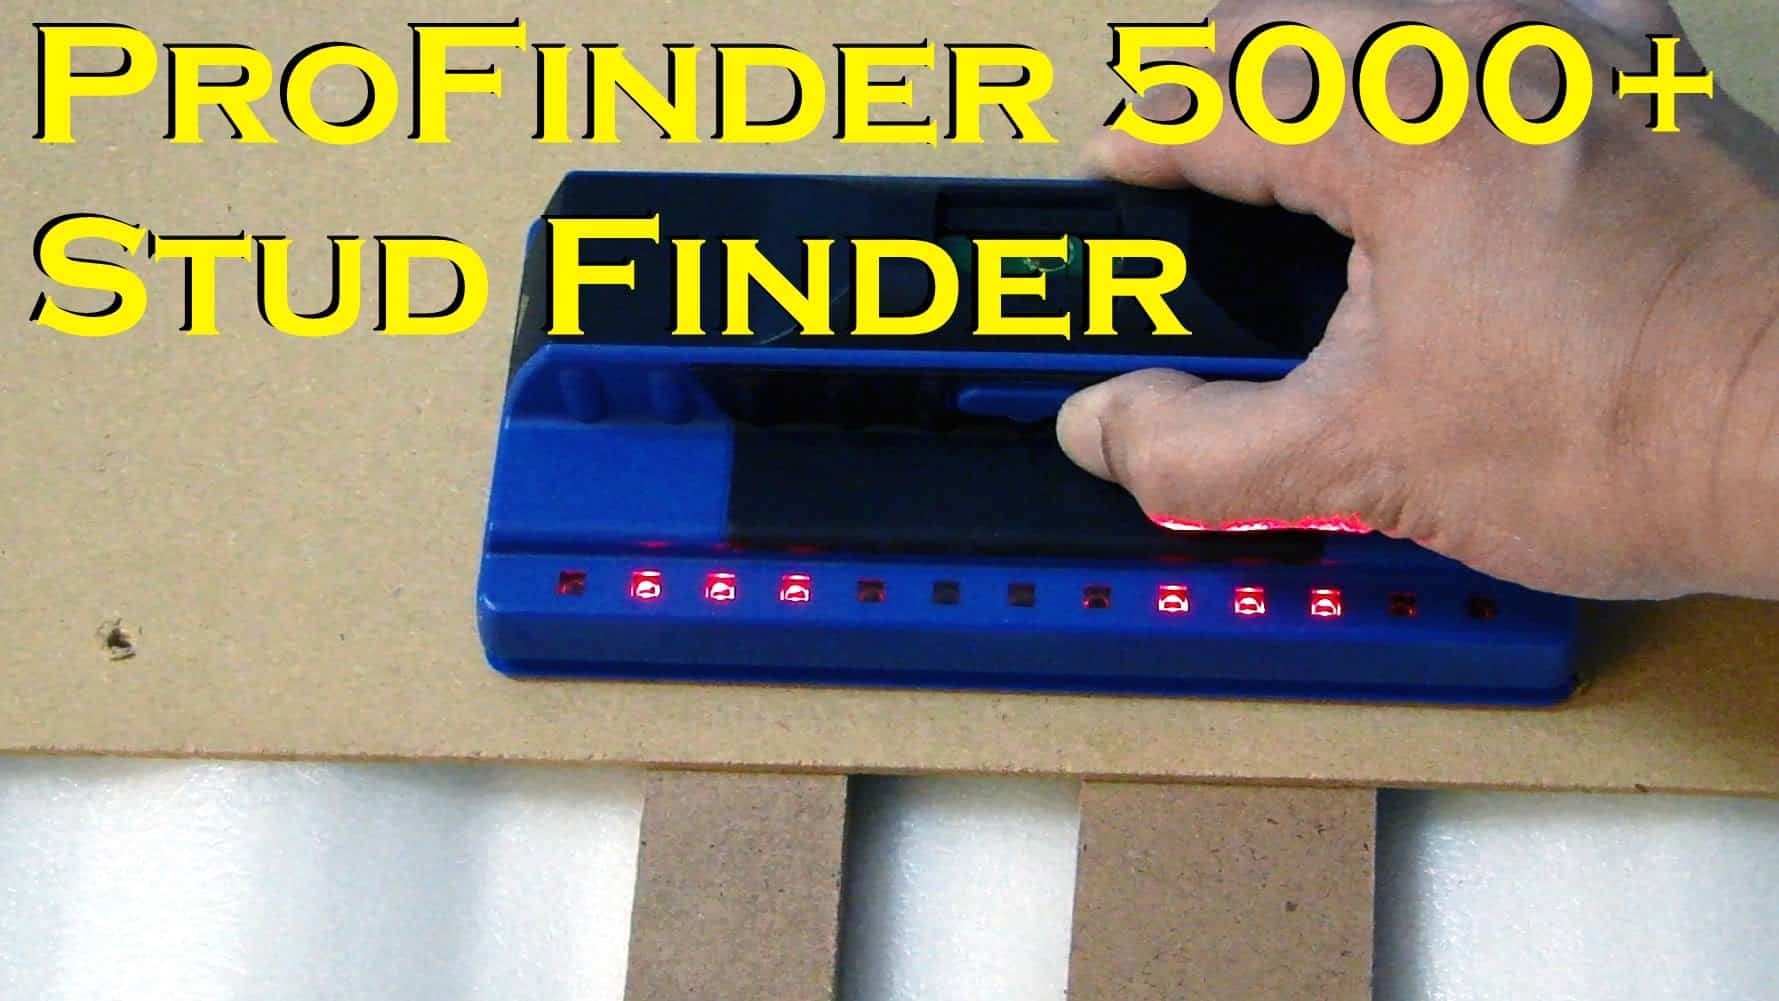 Profinder 5000 Professional Stud Finder Review - Stud Finder Tool